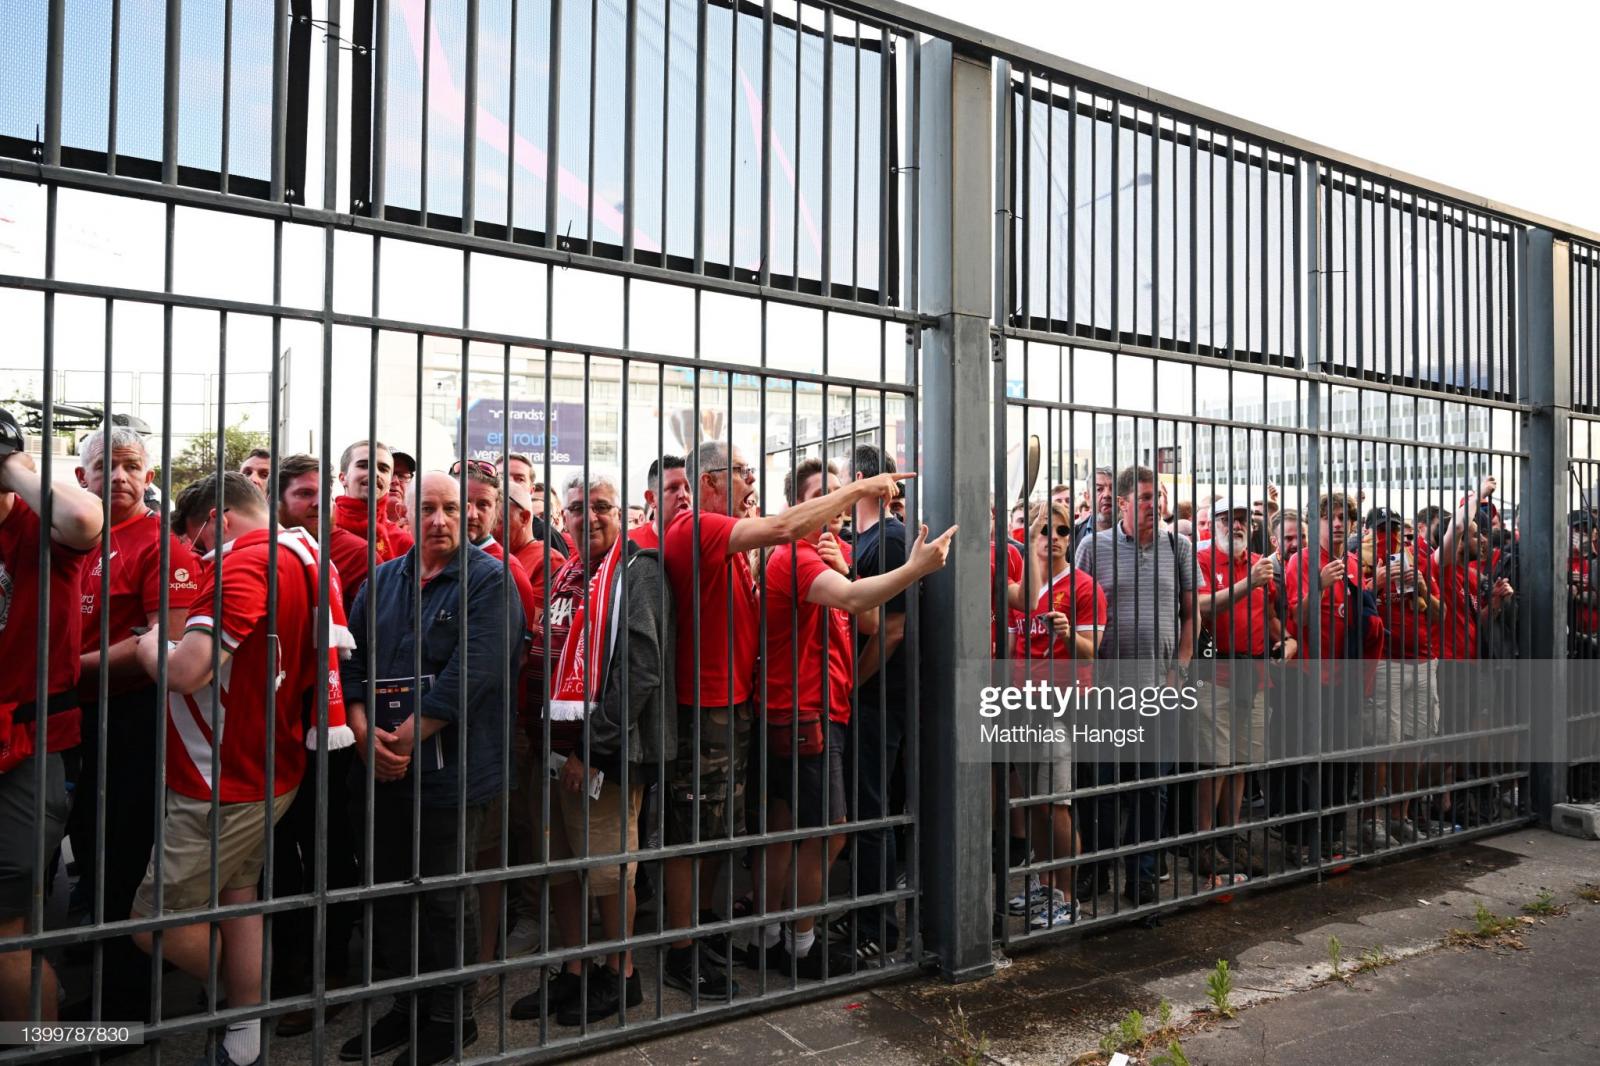 Des spectateurs ont gravi les barrières autour du stade (IMAGES)